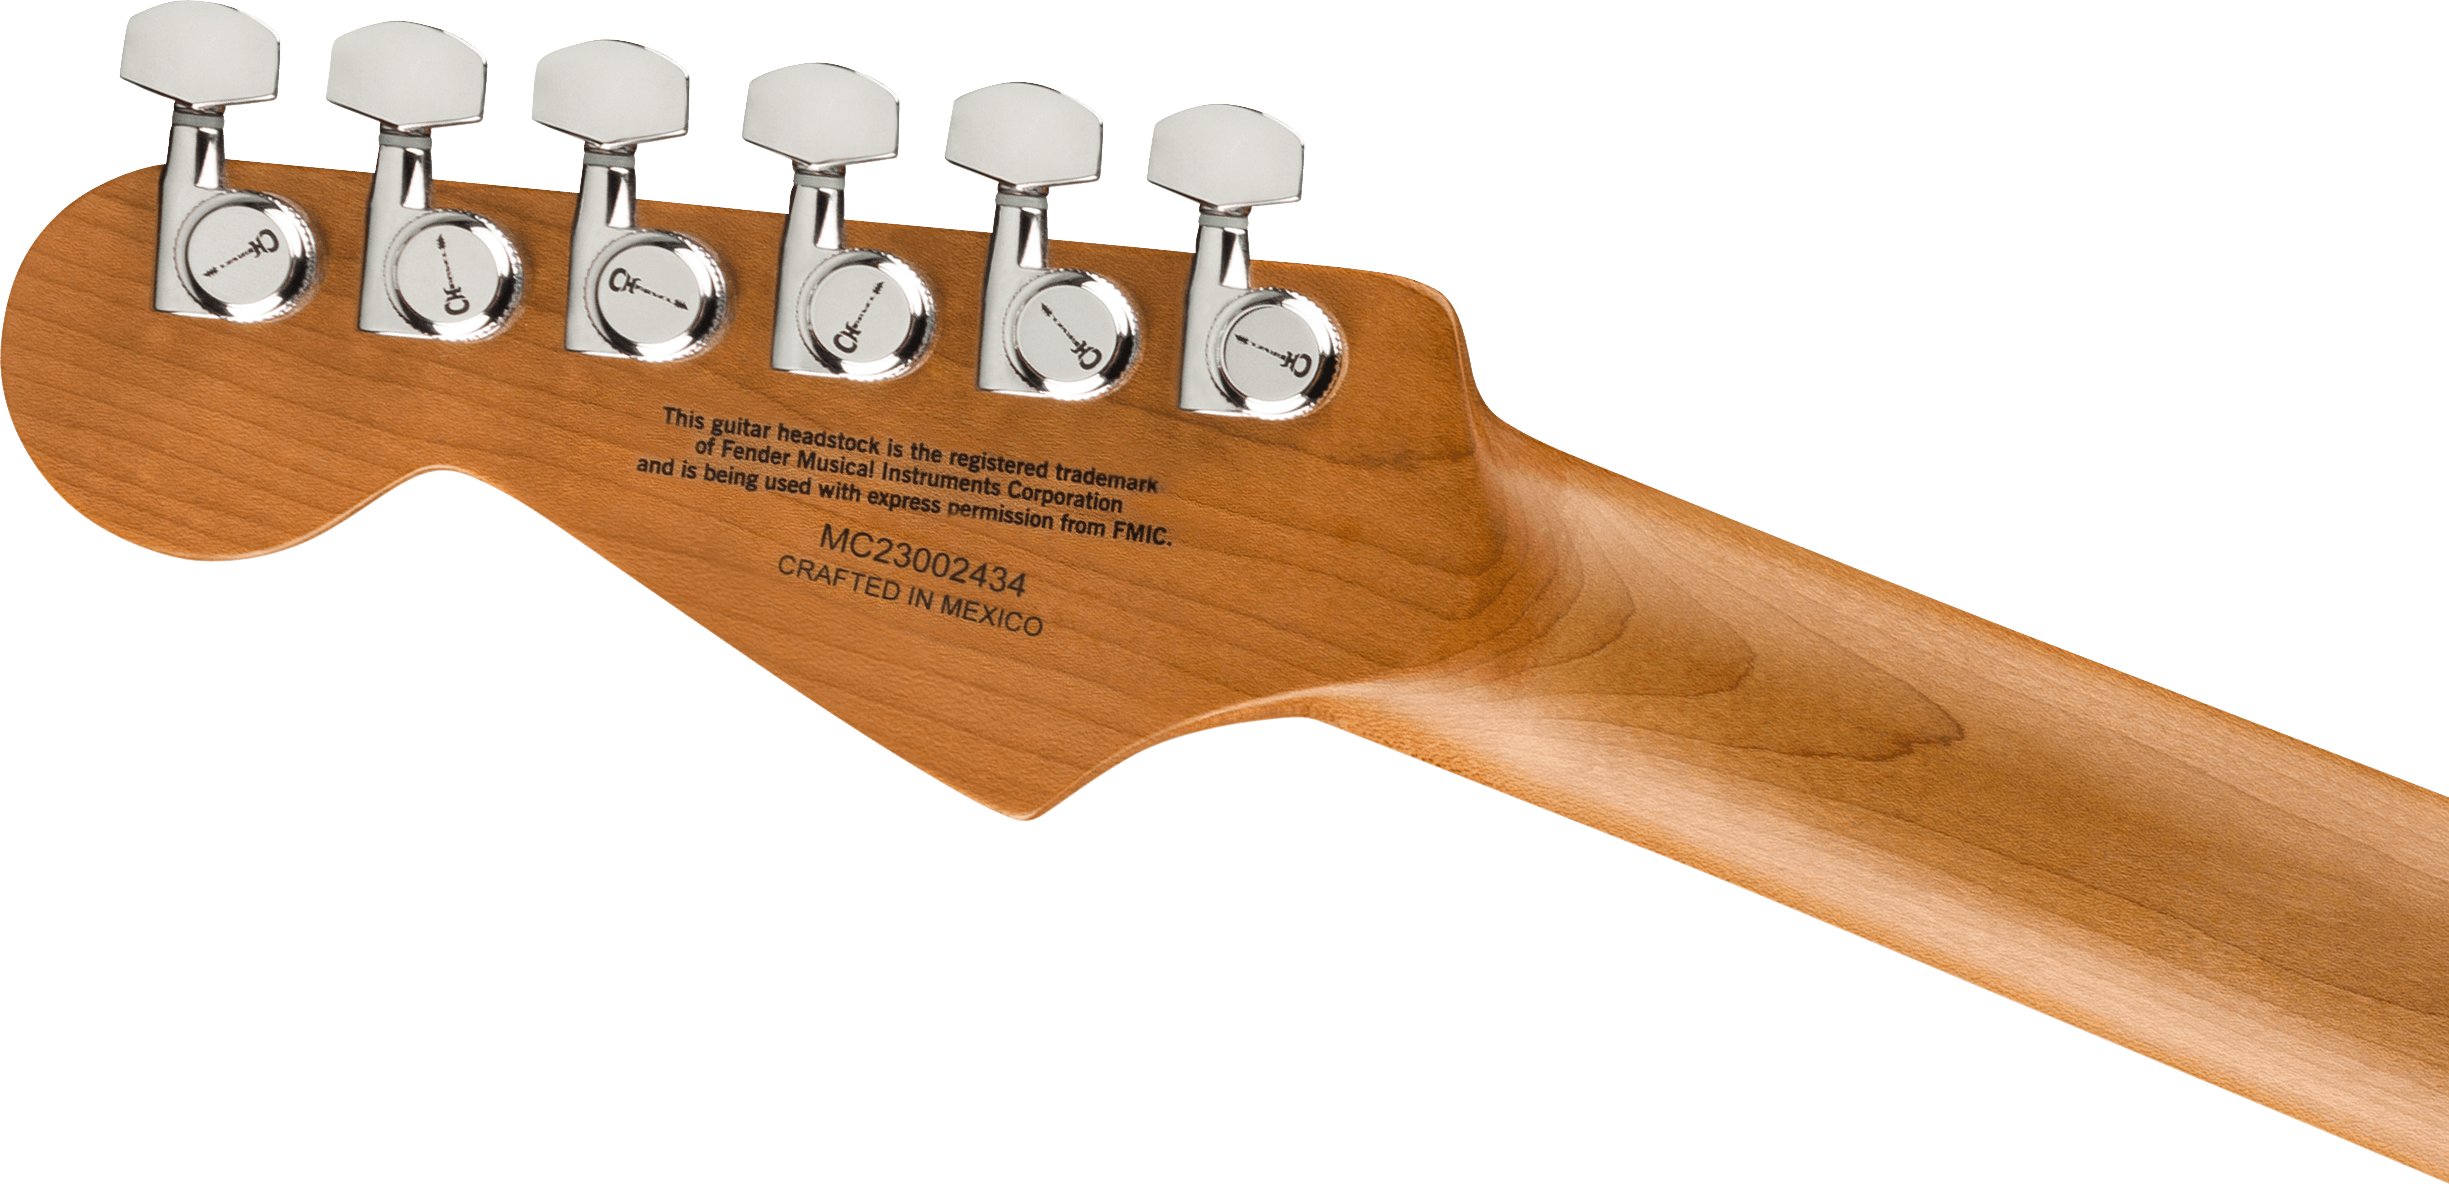 Charvel Dk24 Pro-mod 2pt Hh Eb - Gloss Black - E-Gitarre in Str-Form - Variation 5